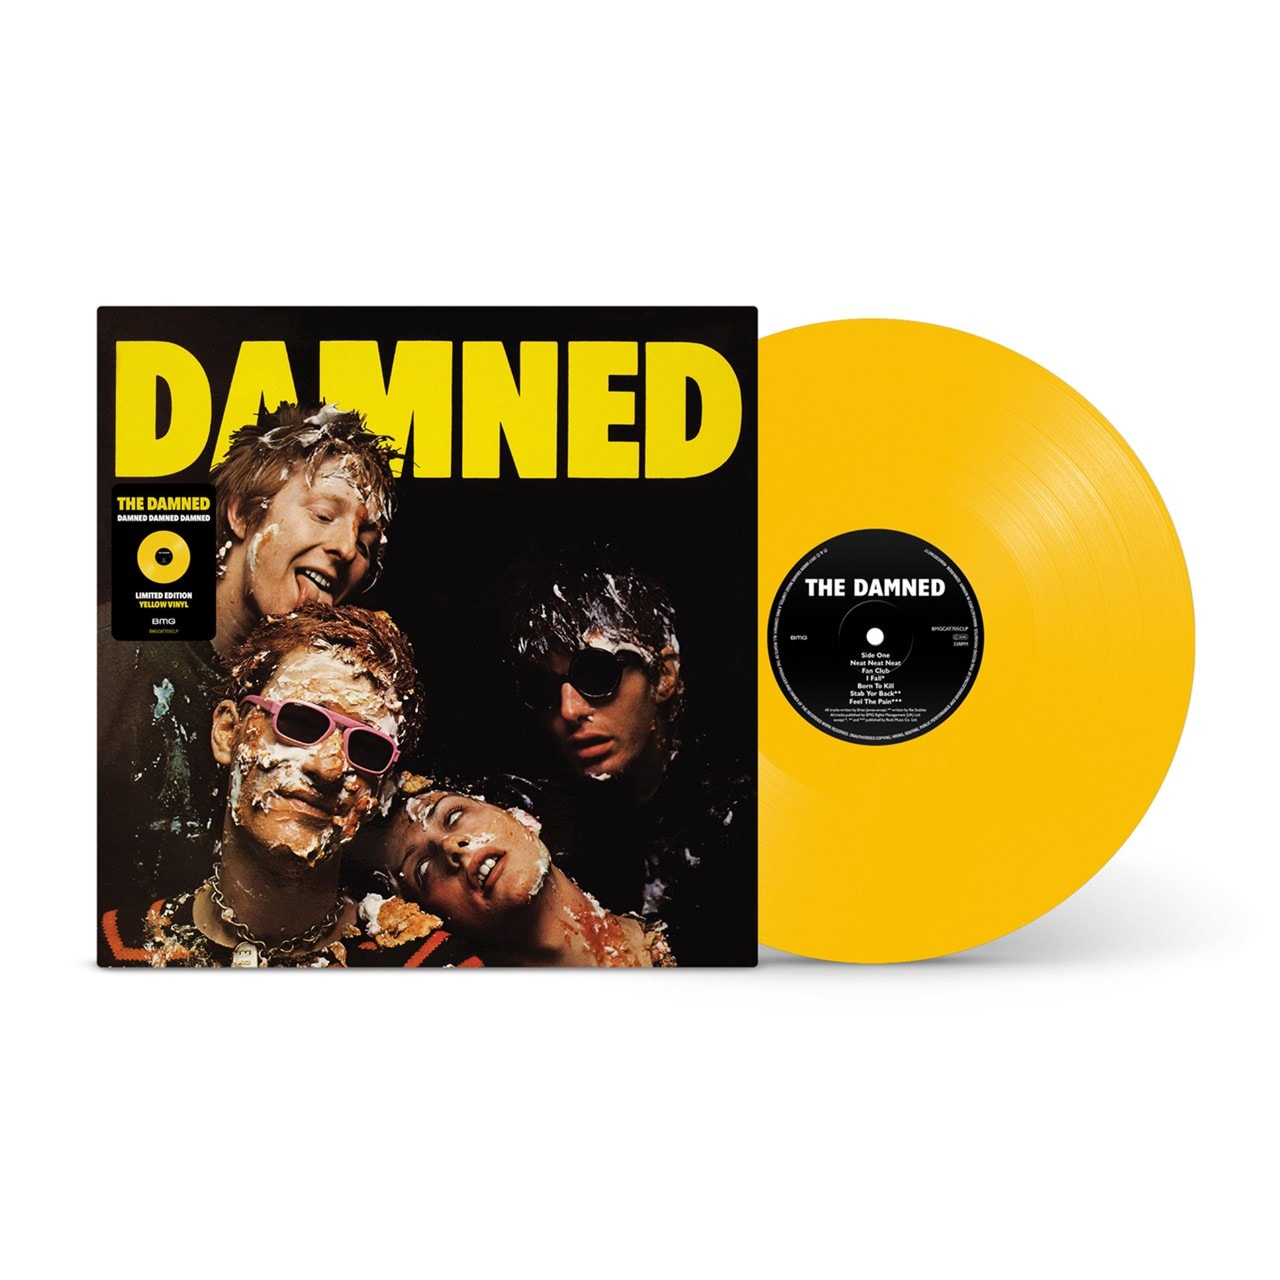 Damned Damned Damned (National Album Day 2022) Vinyl 12" Album Free